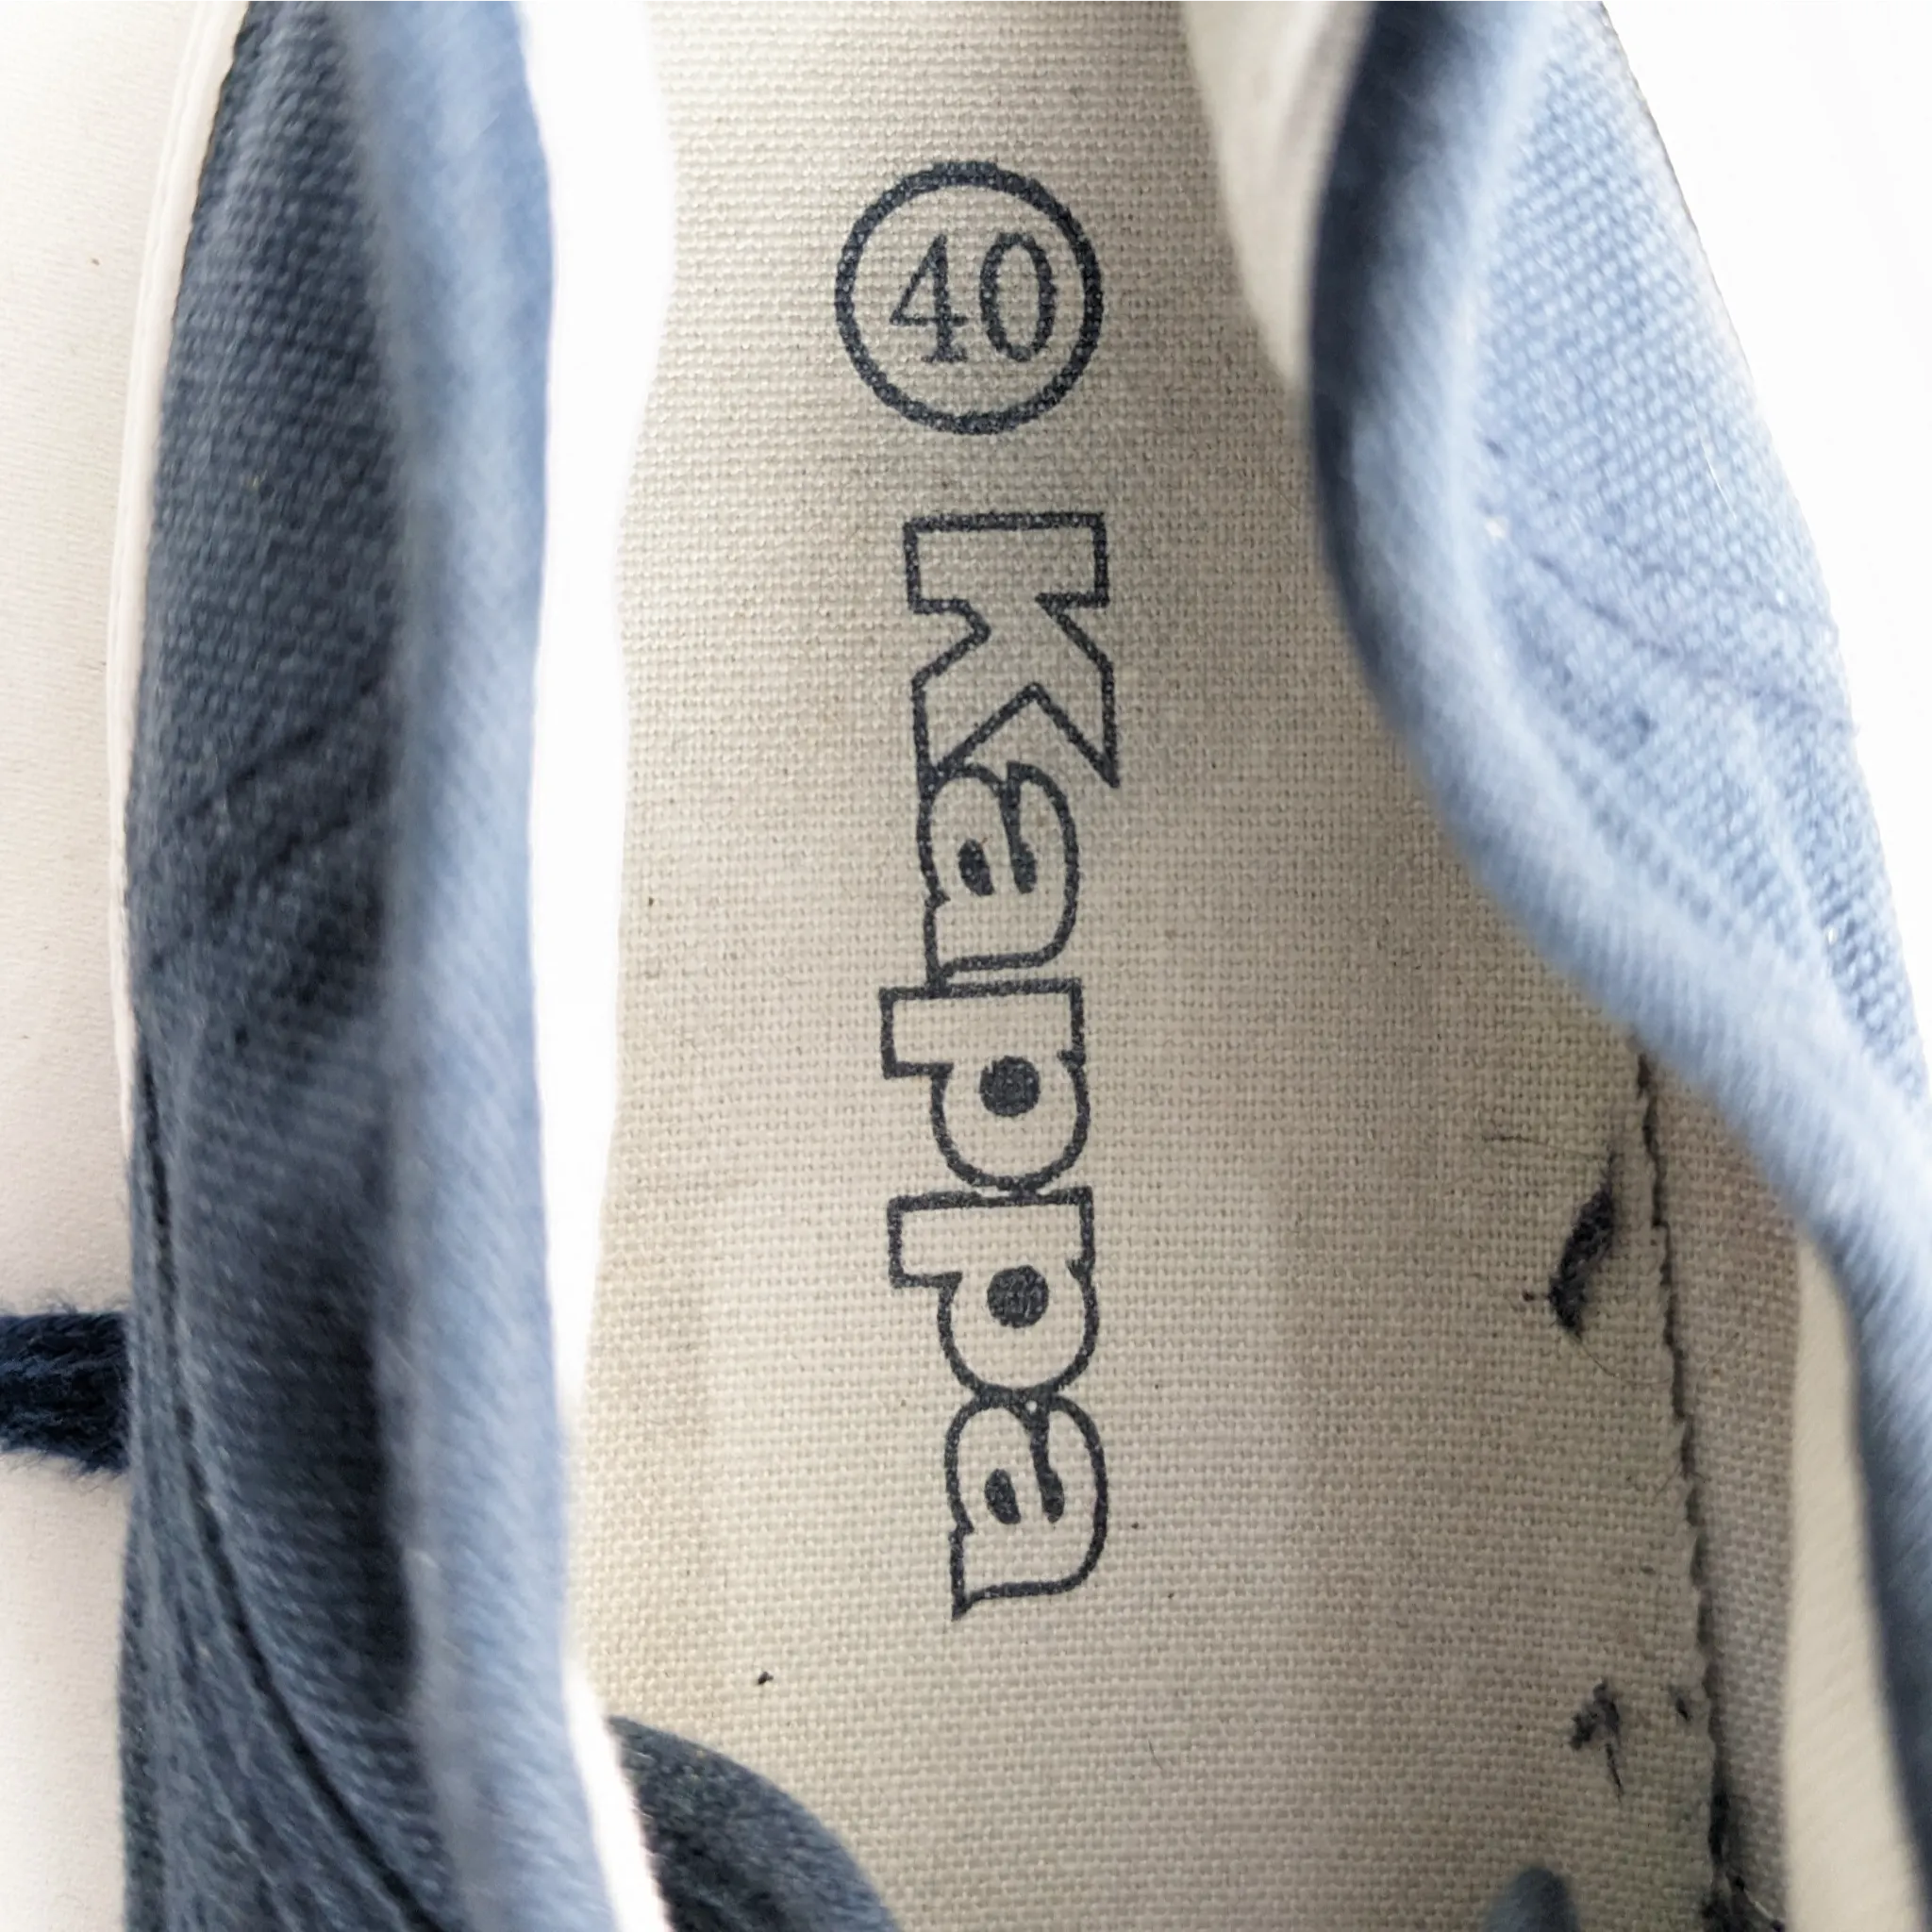 Kappa Blue Sneakers